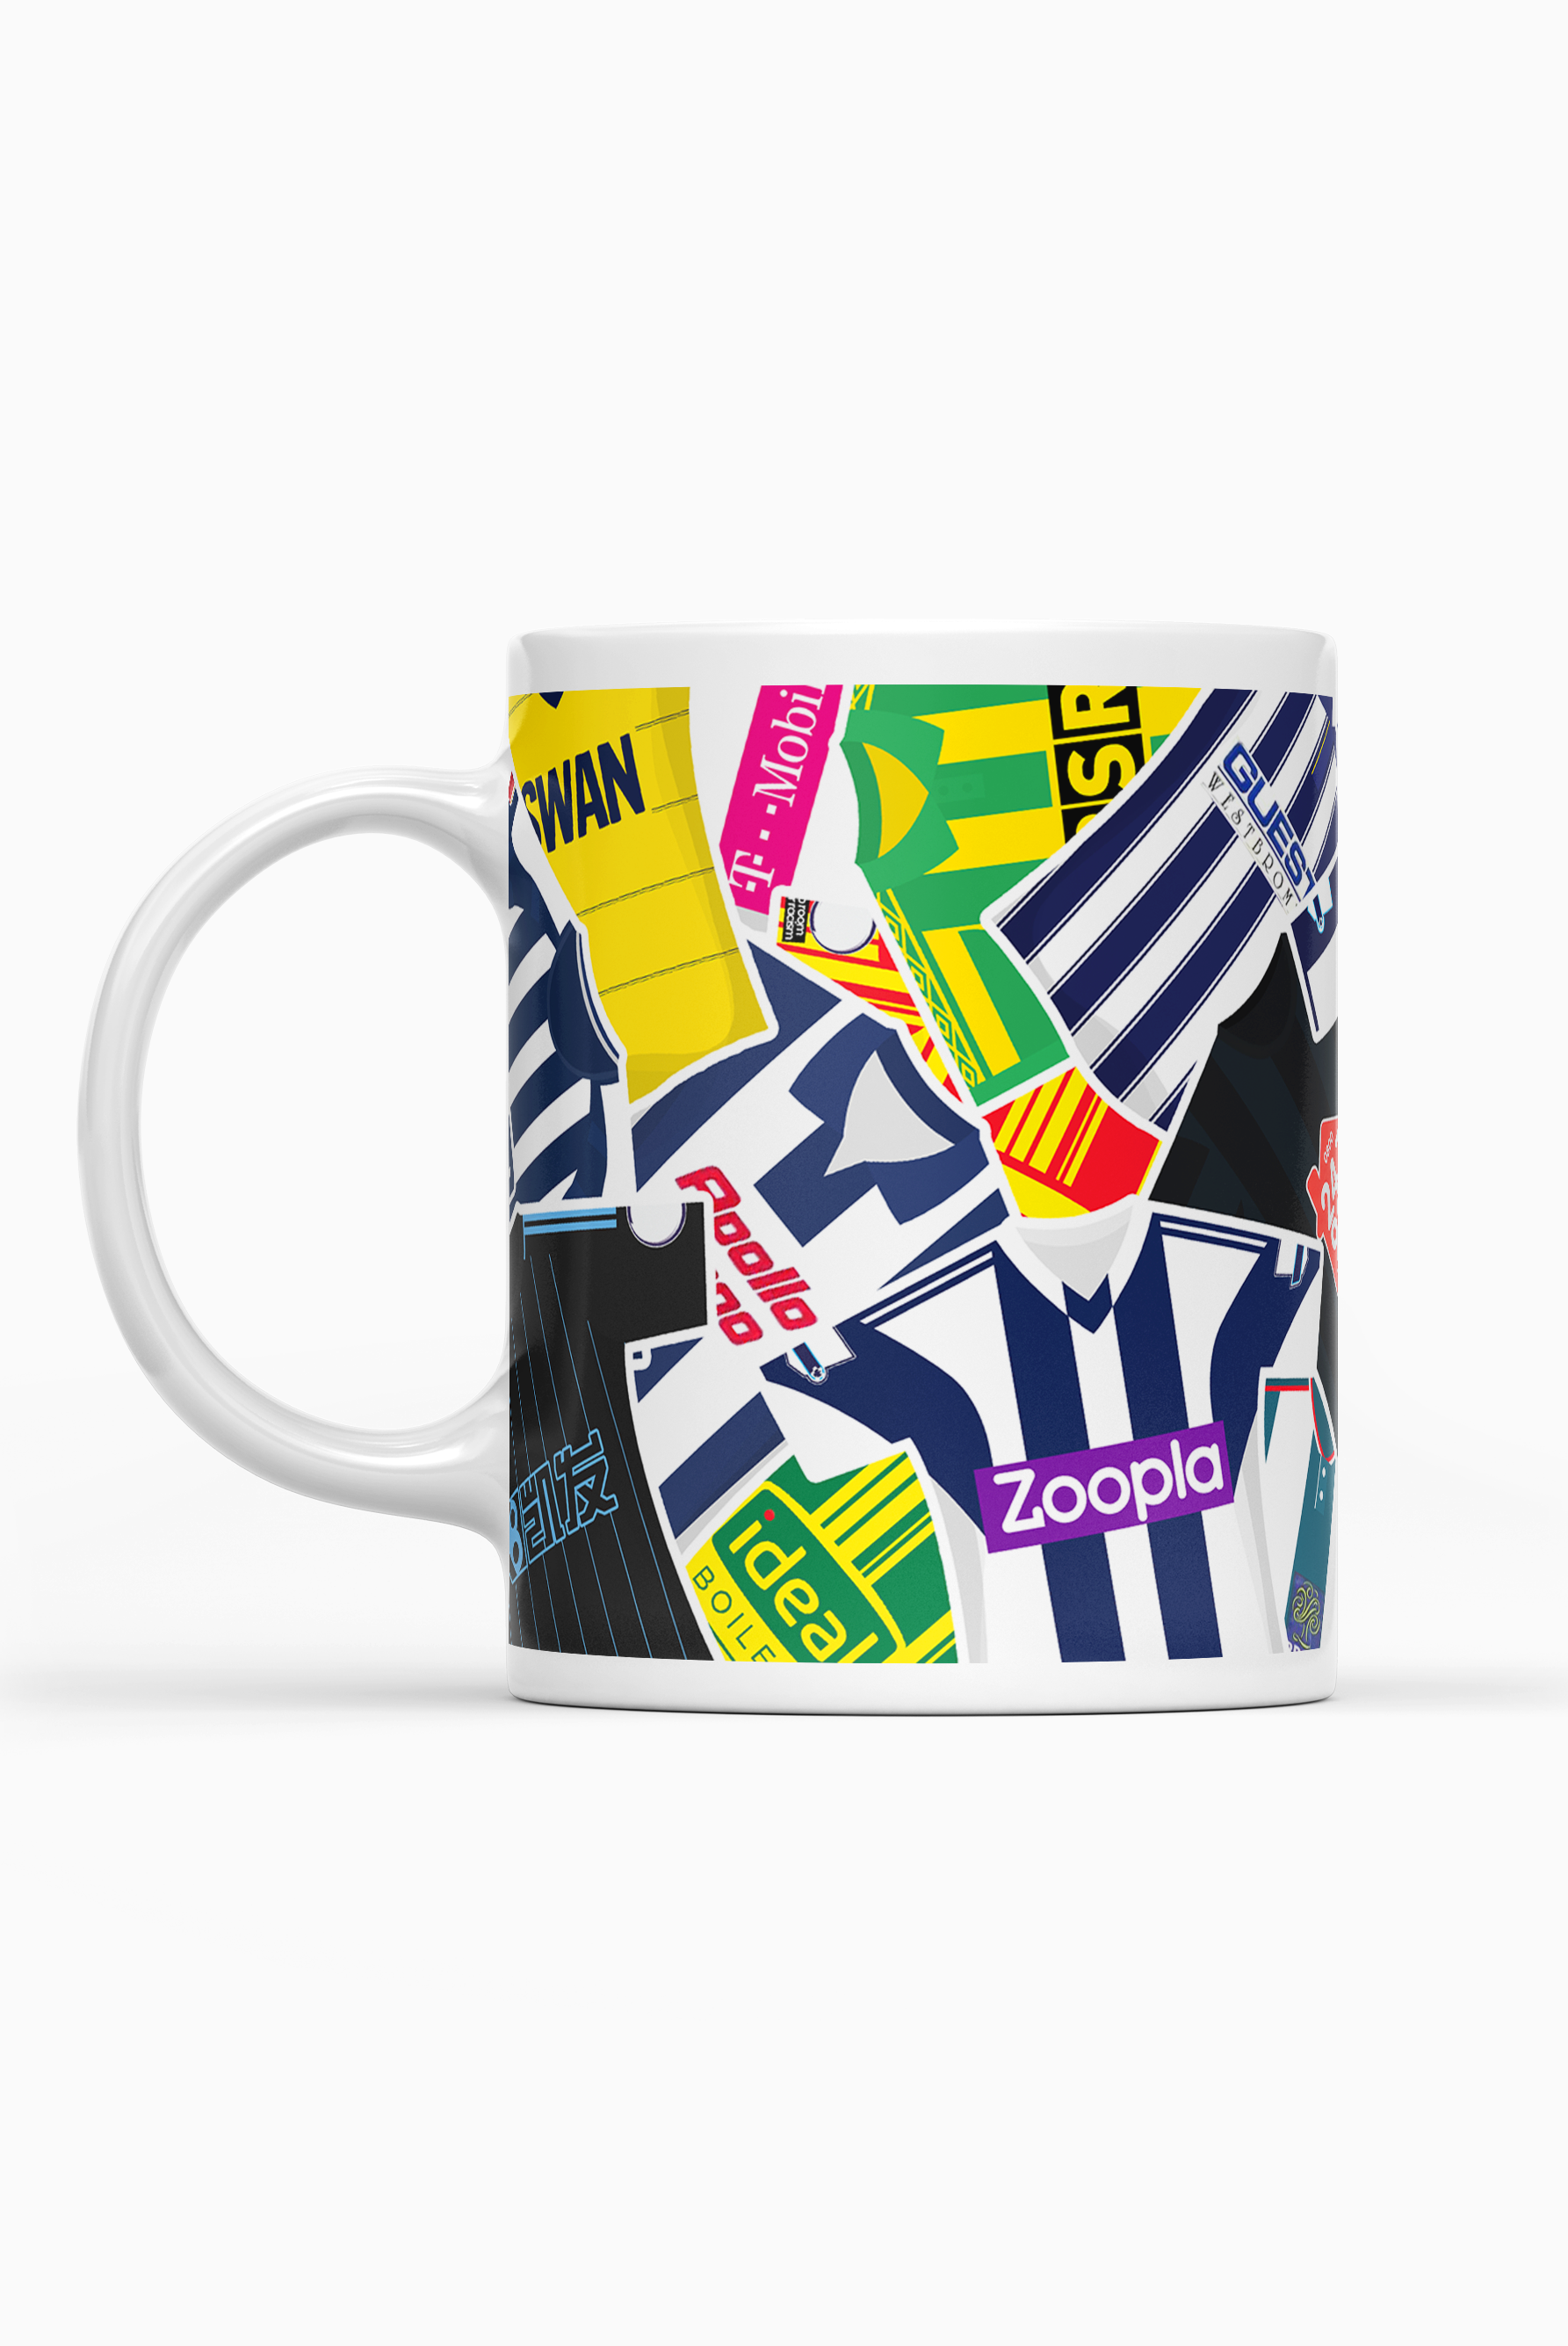 West Brom / Iconic Shirts Mug